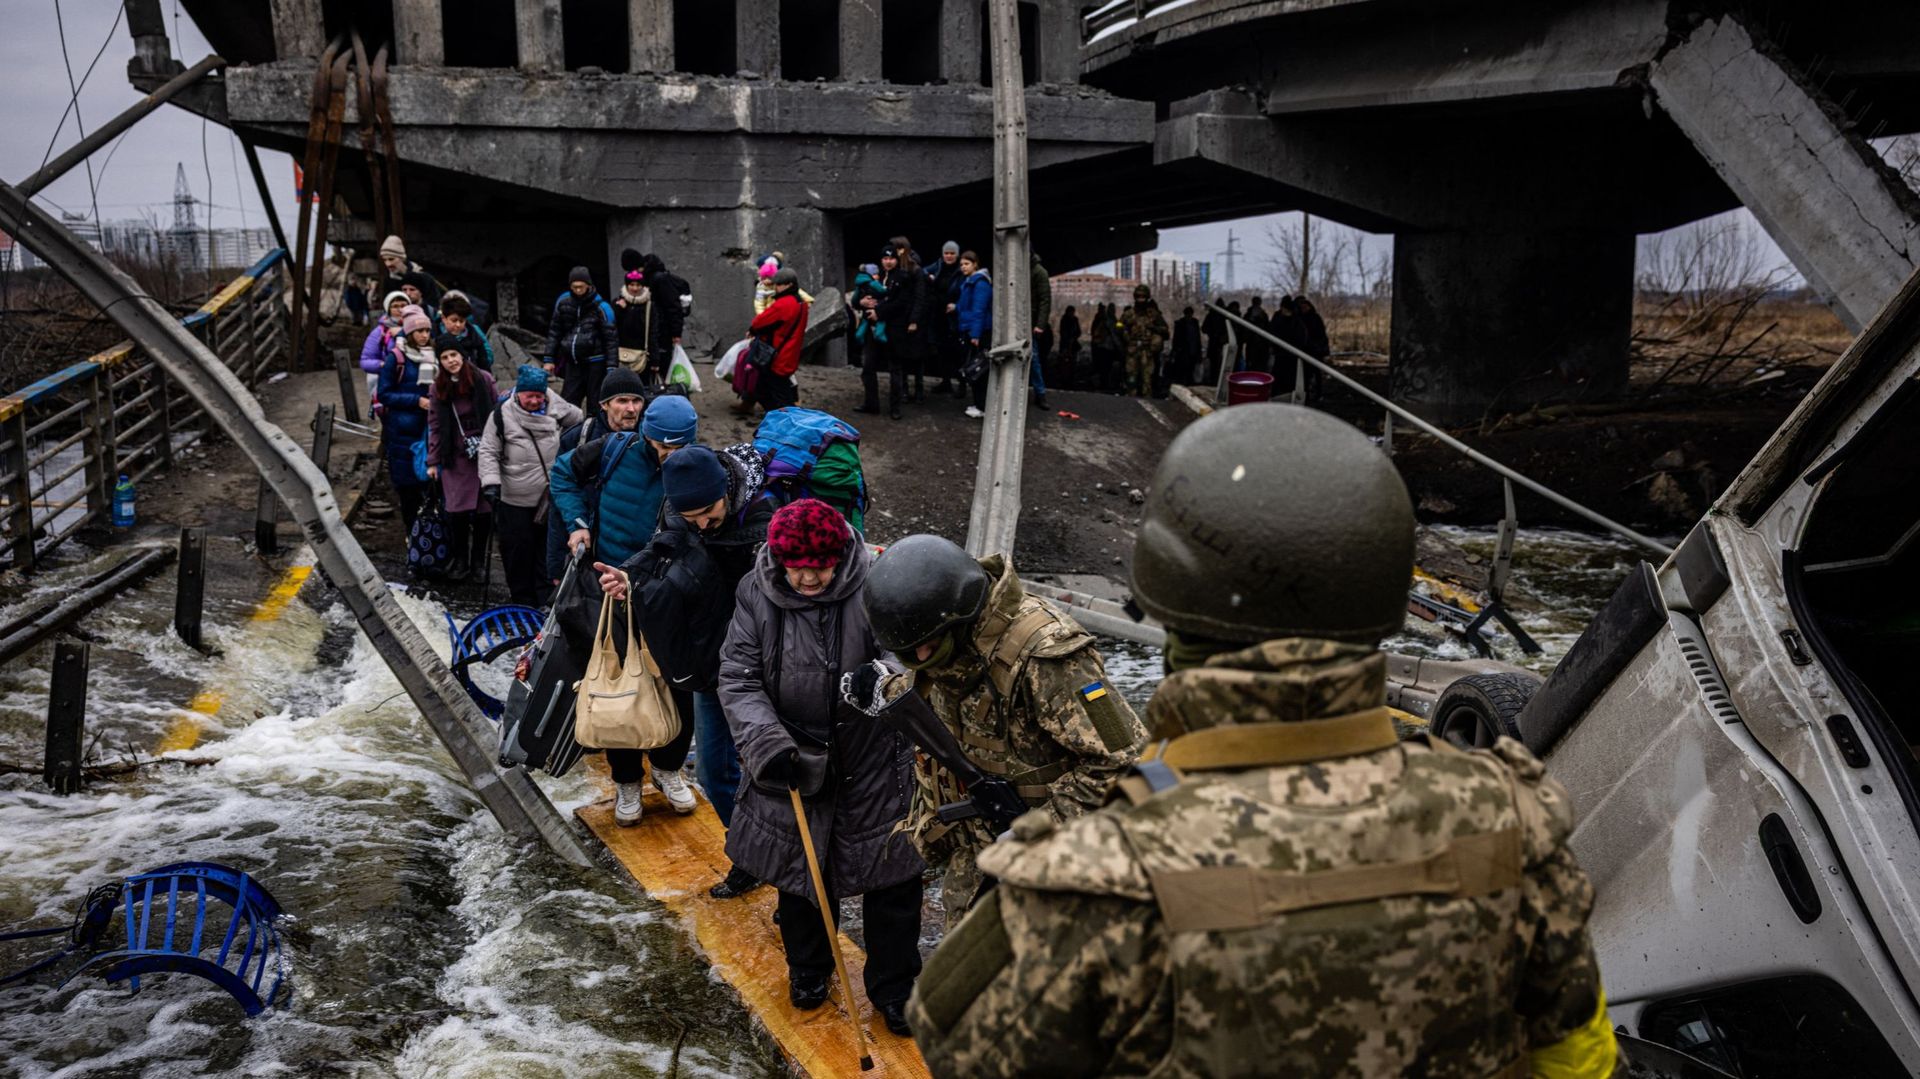 Les évacuations de civils continuent dans plusieurs villes du pays. À Irpin, des centaines de civils traversent la rivière sur une planche en bois, suite à la destruction du pont par l’armée ukrainienne pour freiner l’avancée russe.